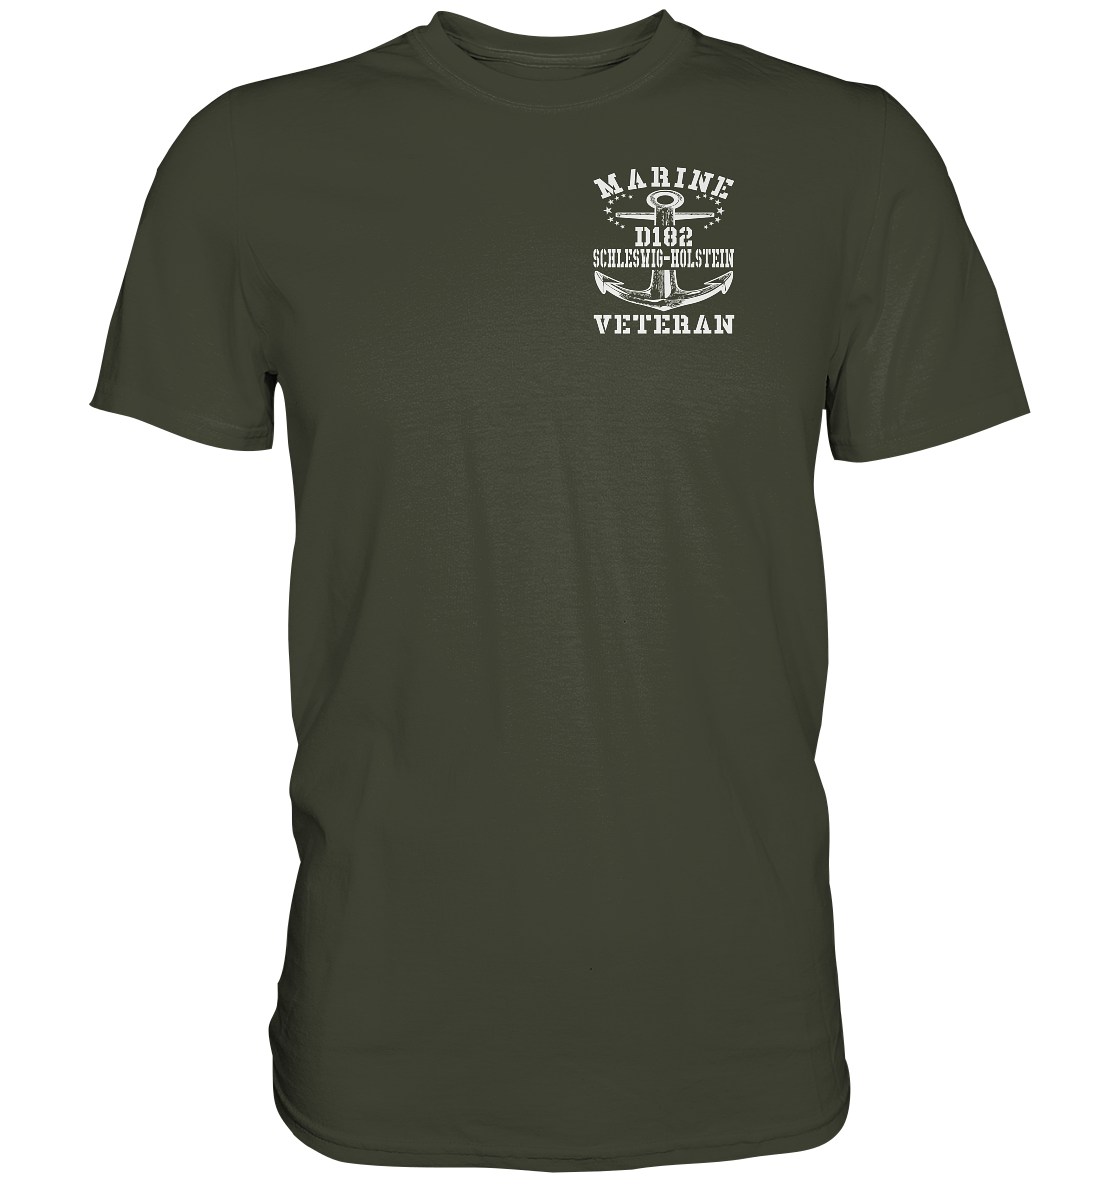 D182 Zerstörer SCHLESWIG-HOLSTEIN Marine Veteran Brustlogo - Premium Shirt